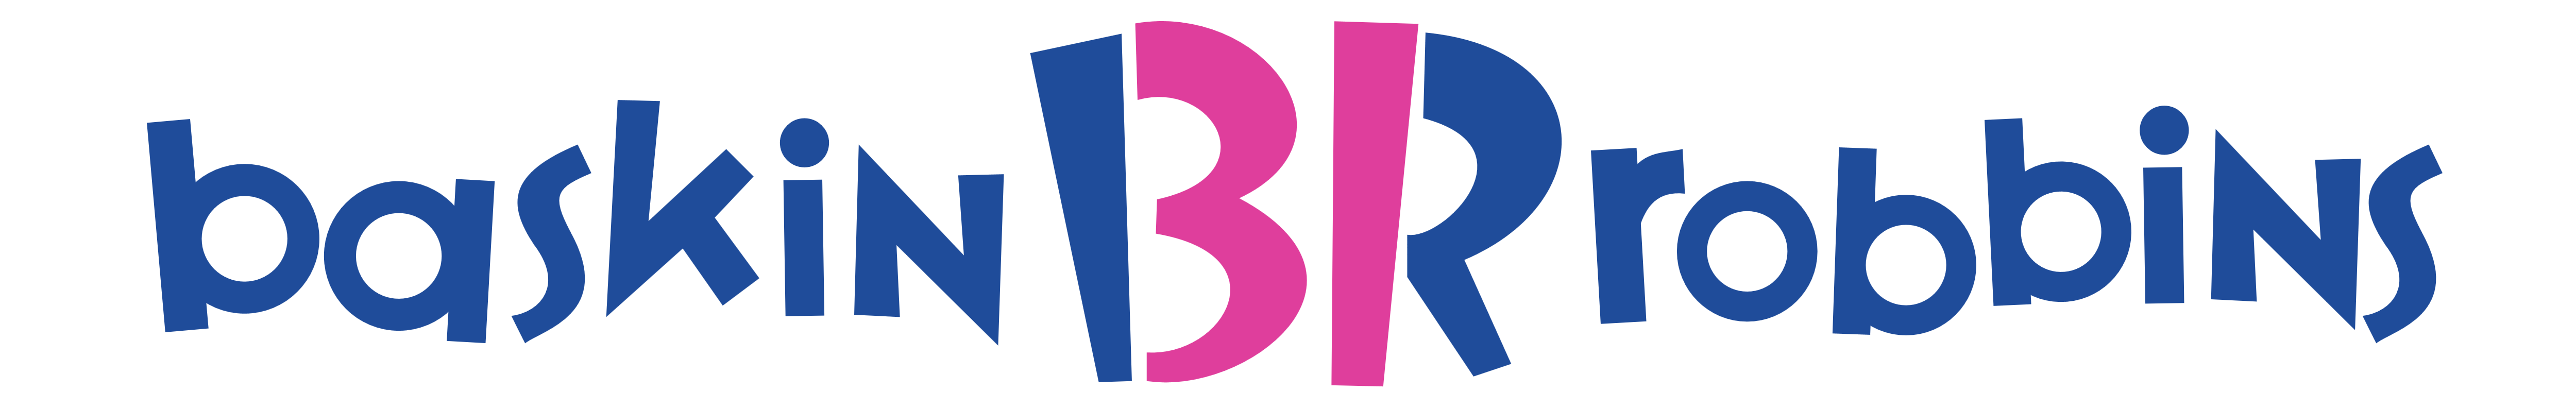 Baskin Robbins Logo PNG - 177366